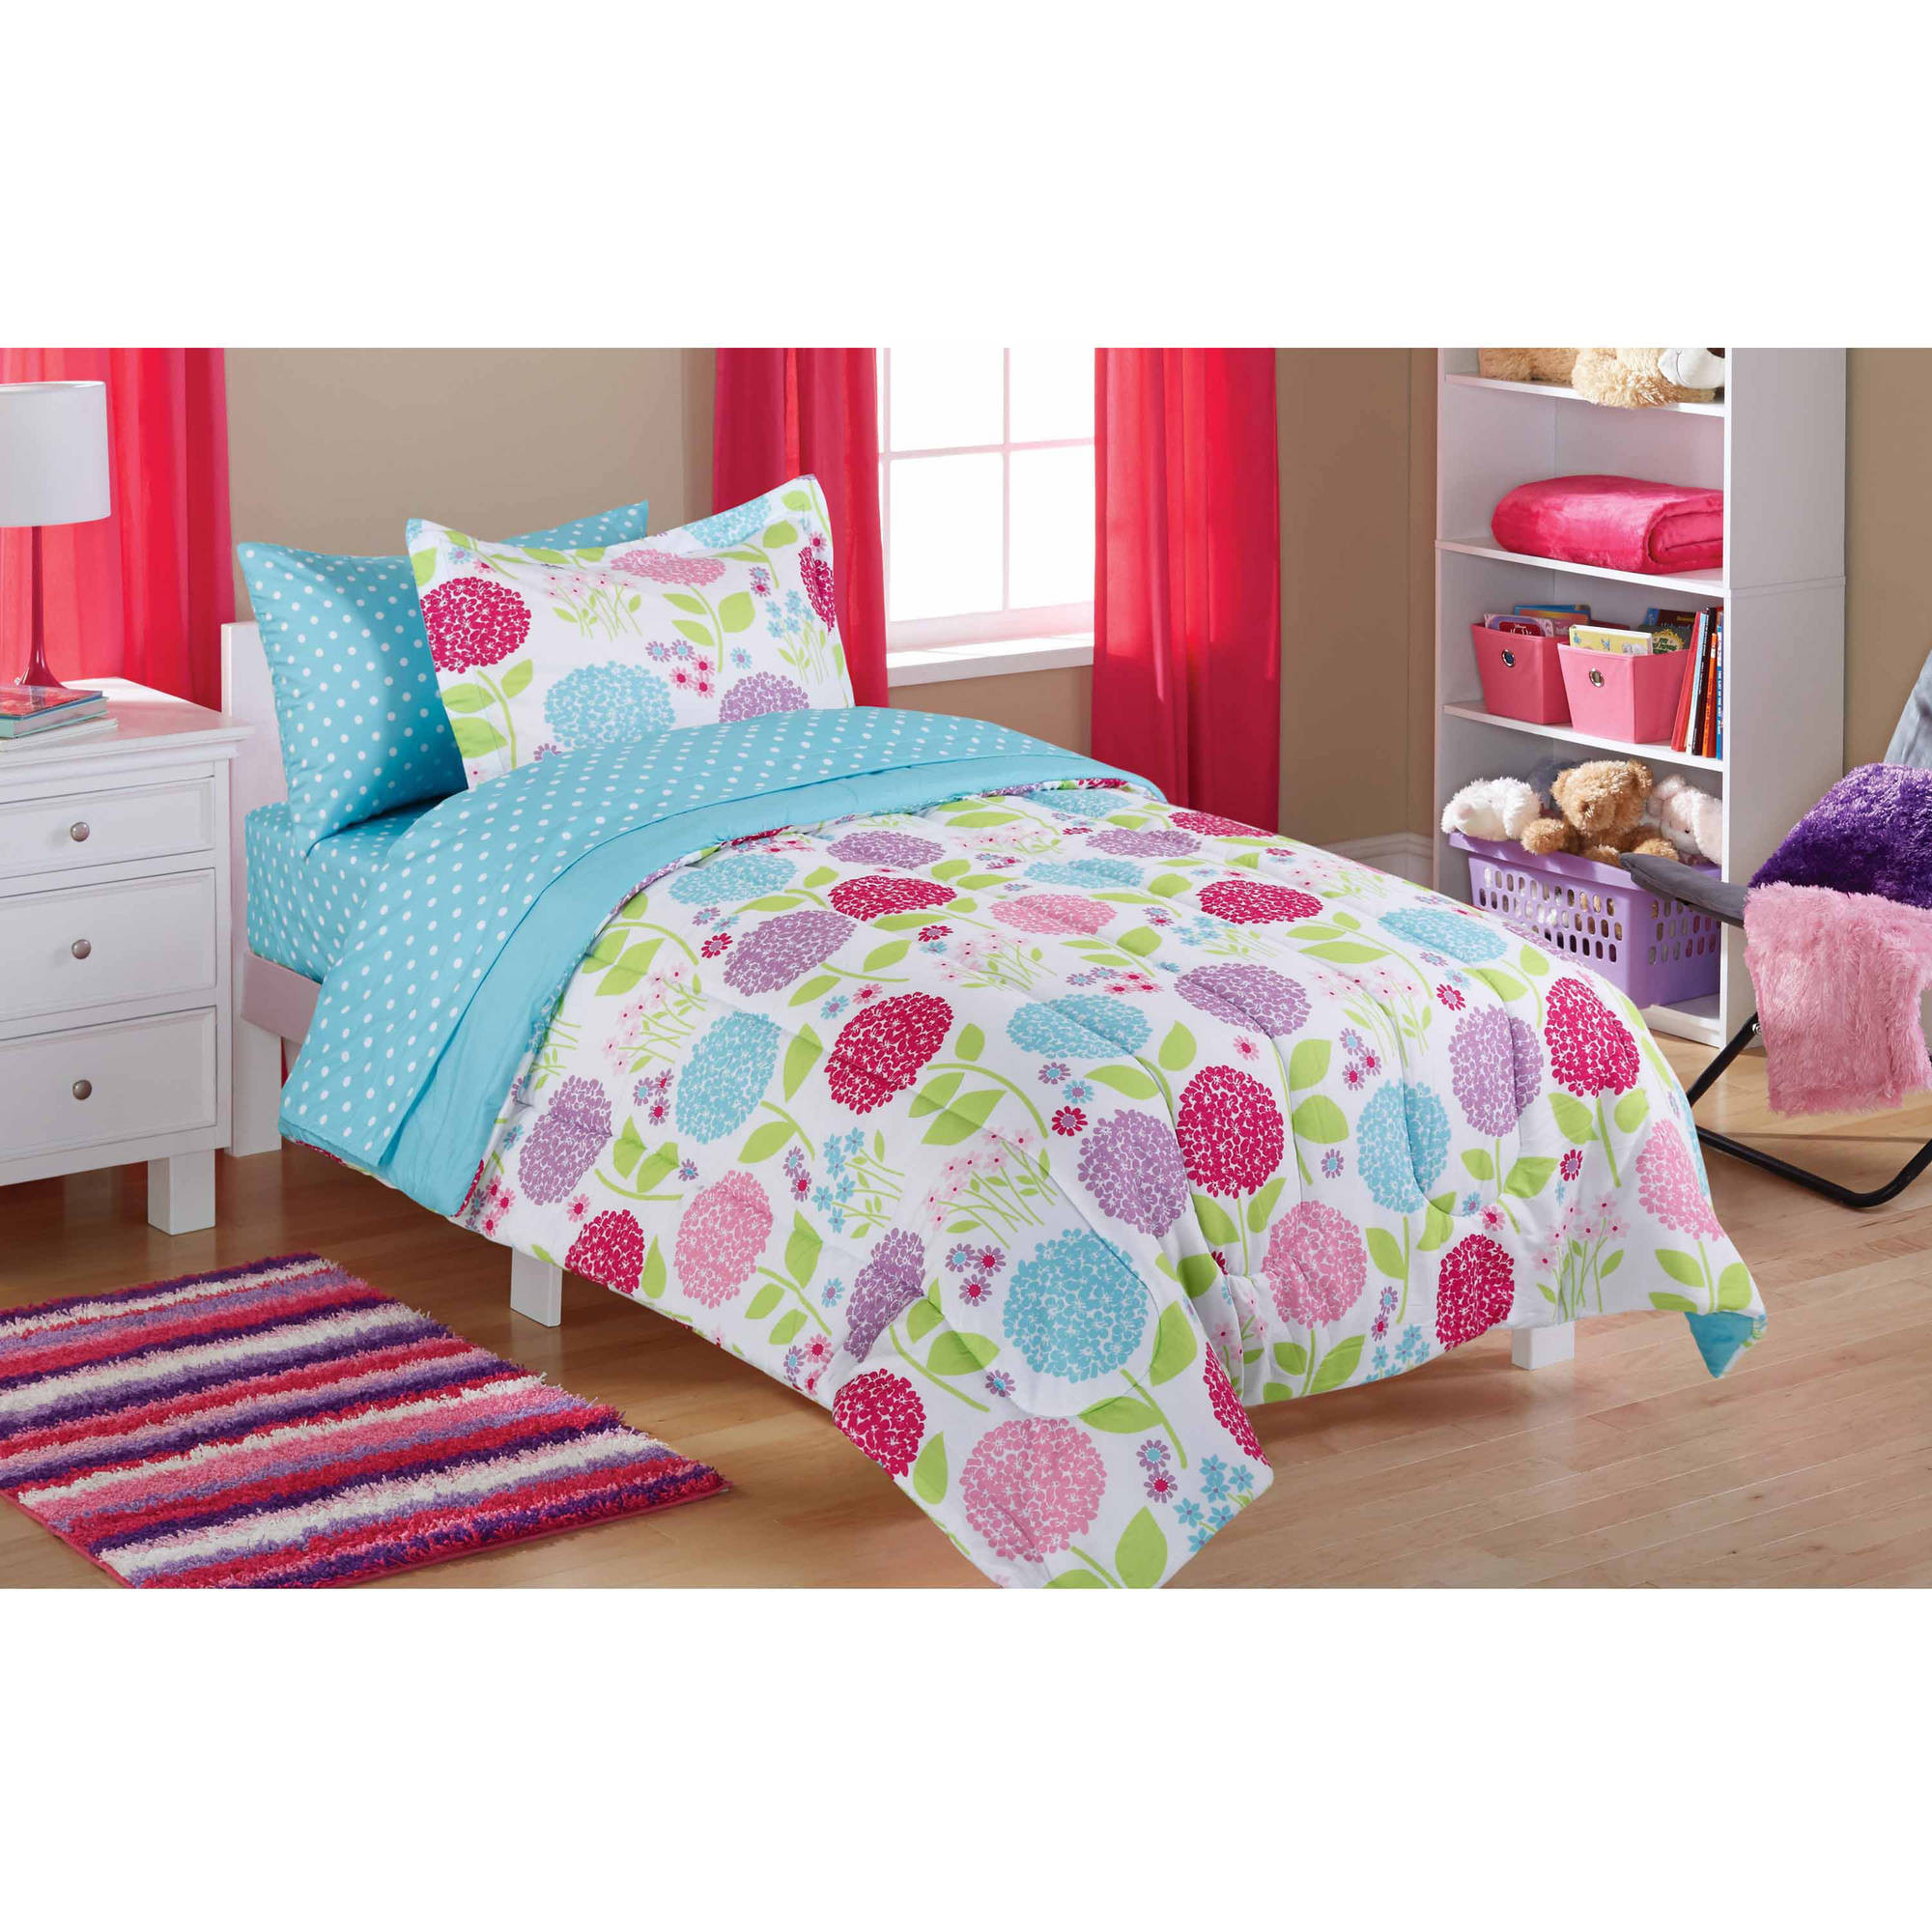 Walmart Bedroom Sets For Kids
 Mainstays Kids In the Garden Bed in a Bag Bedding Set